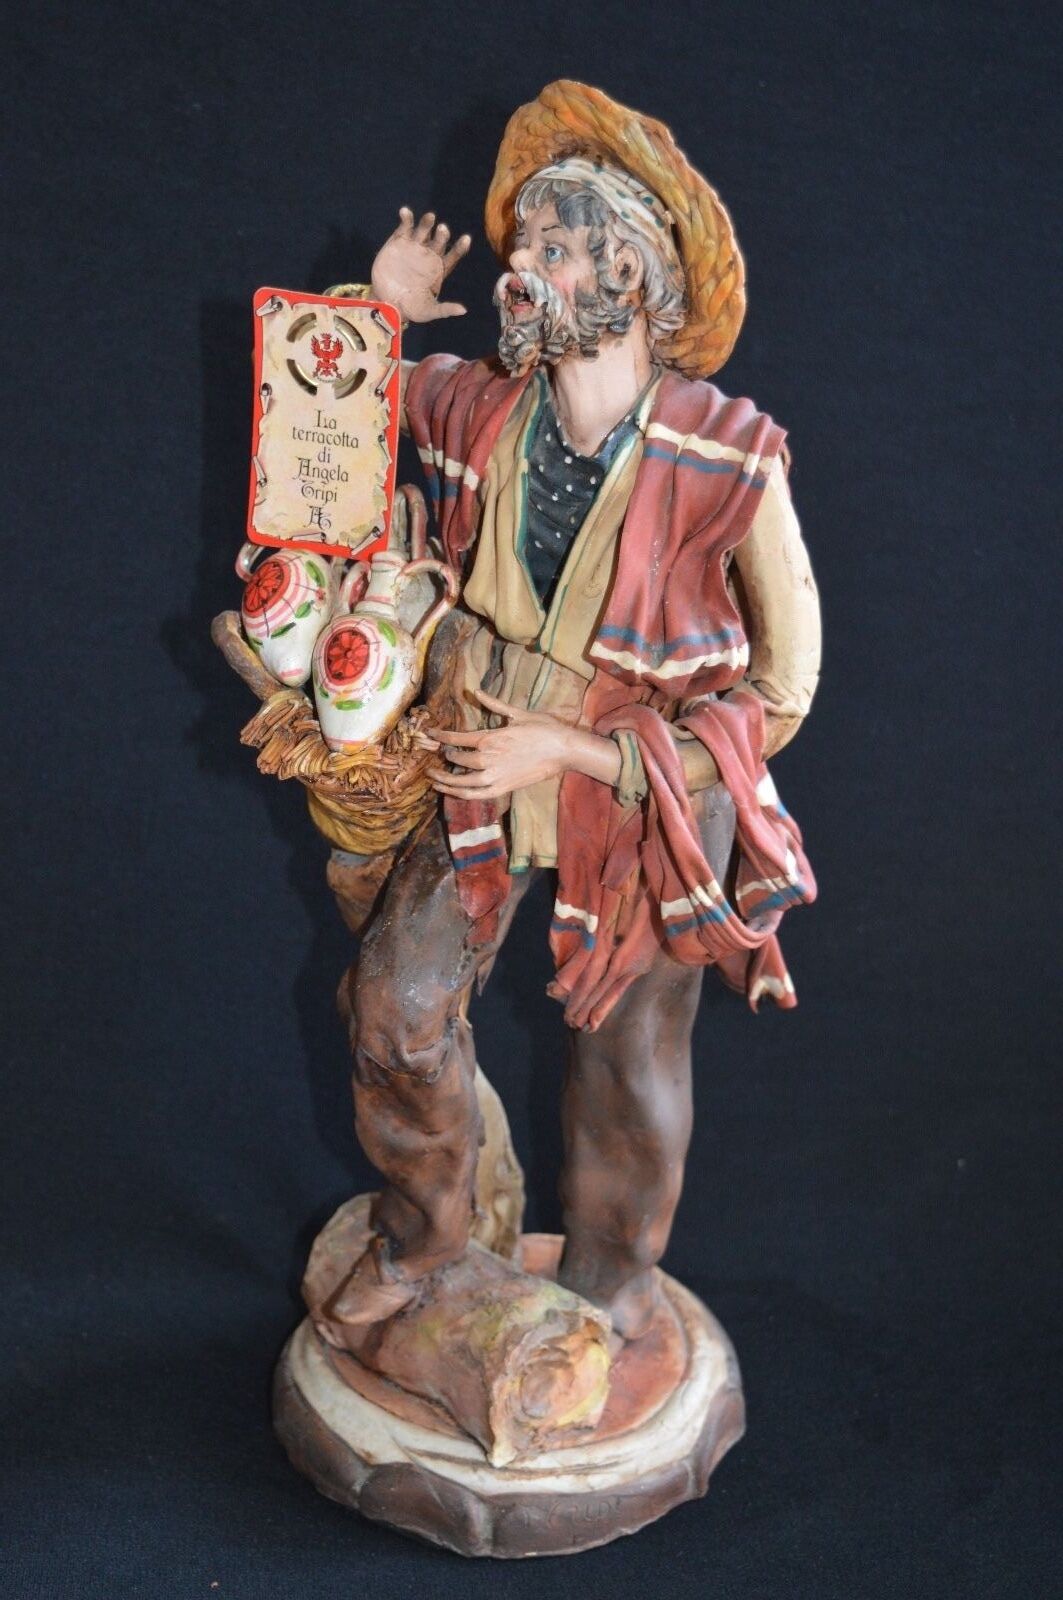 VTG Italy Angela Tripi ORIGINAL Fruit Seller Man Figurine Terracotta NOT Resin